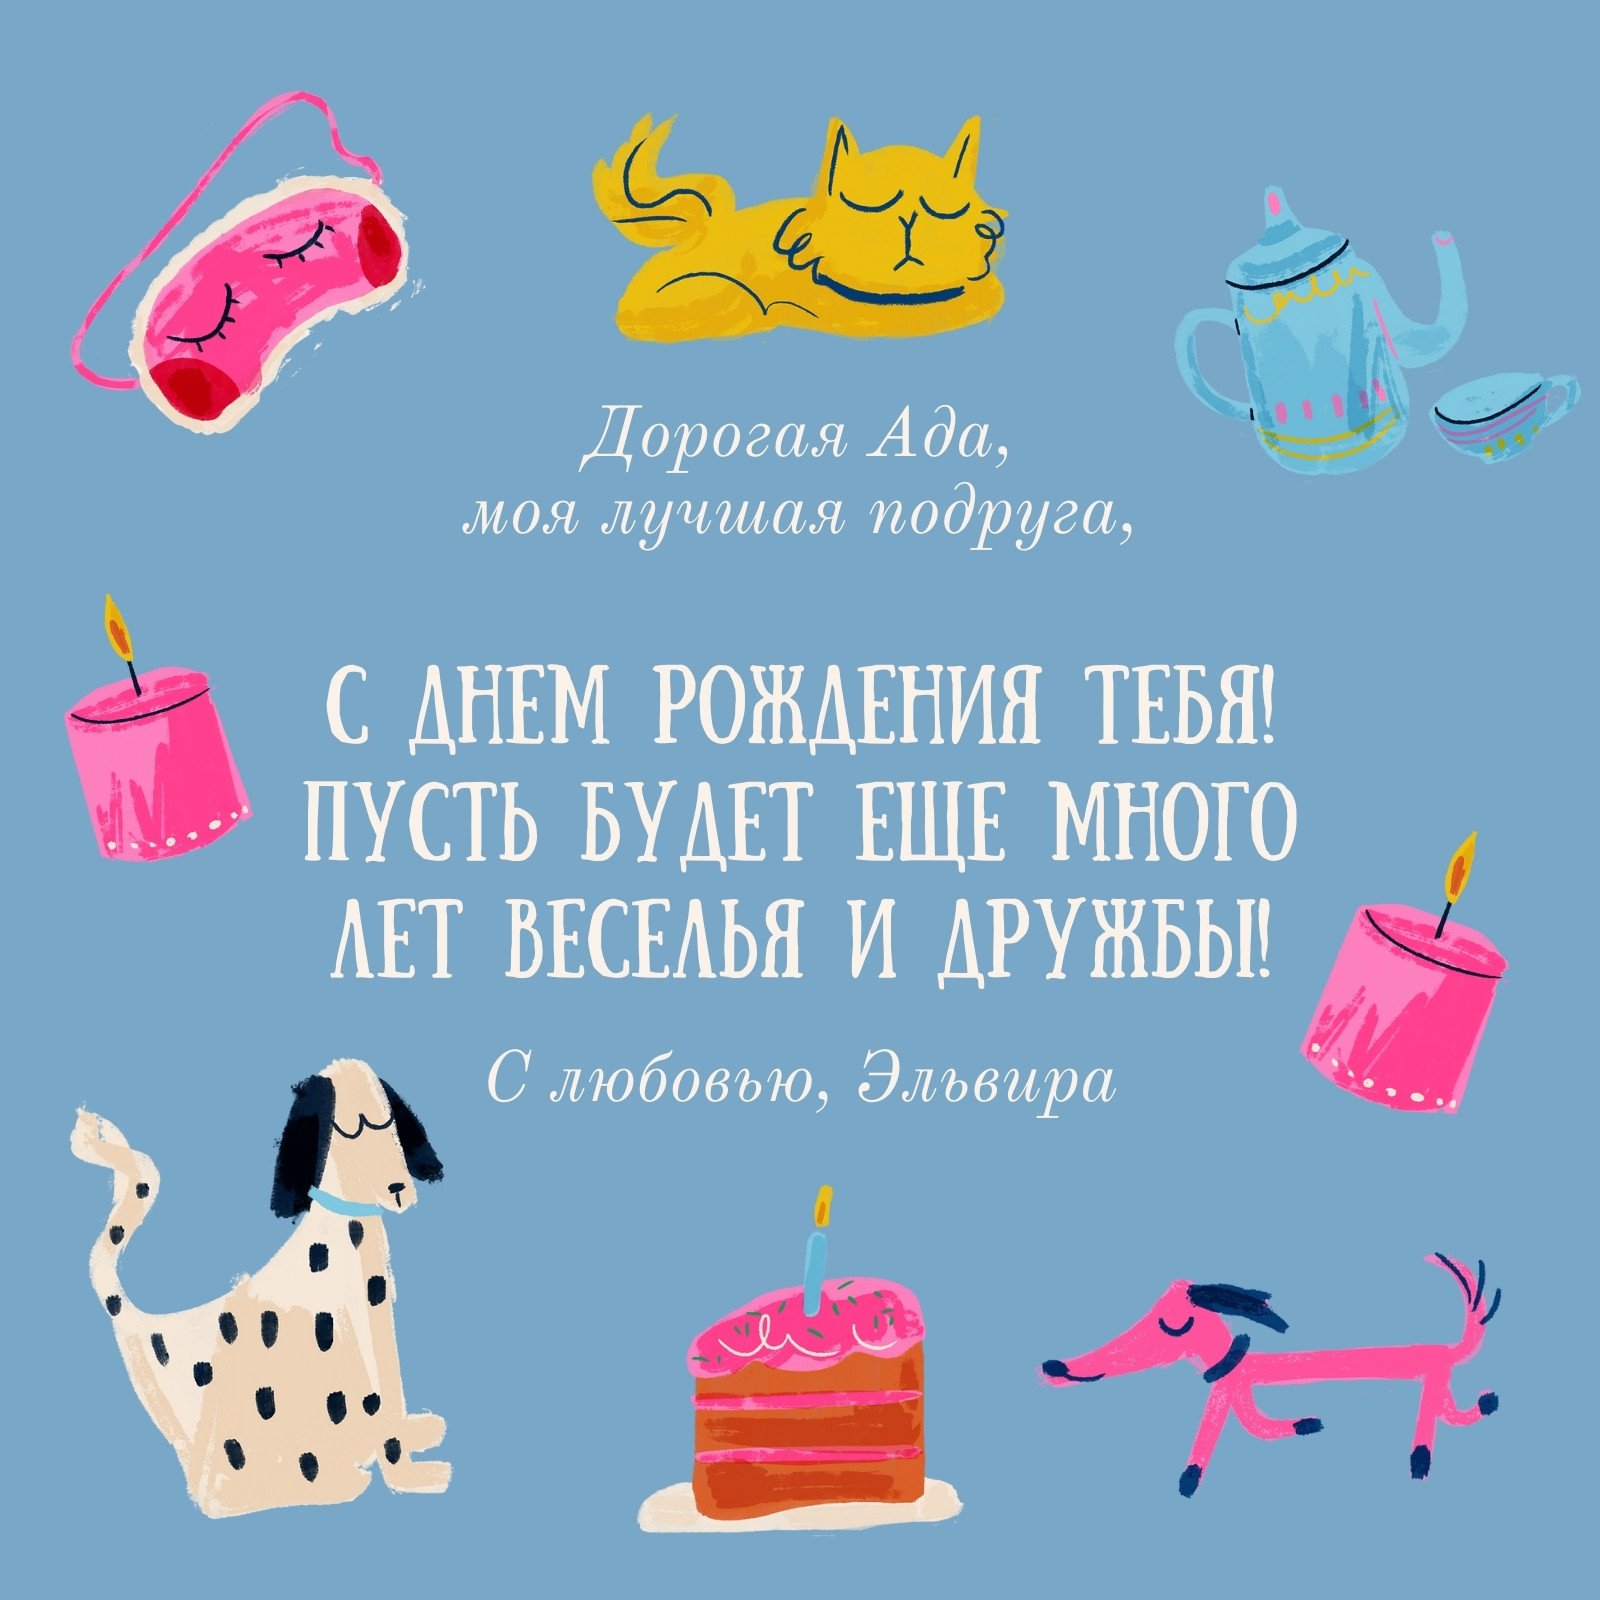 День рождения в ресторанах, кафе и барах Петербурга